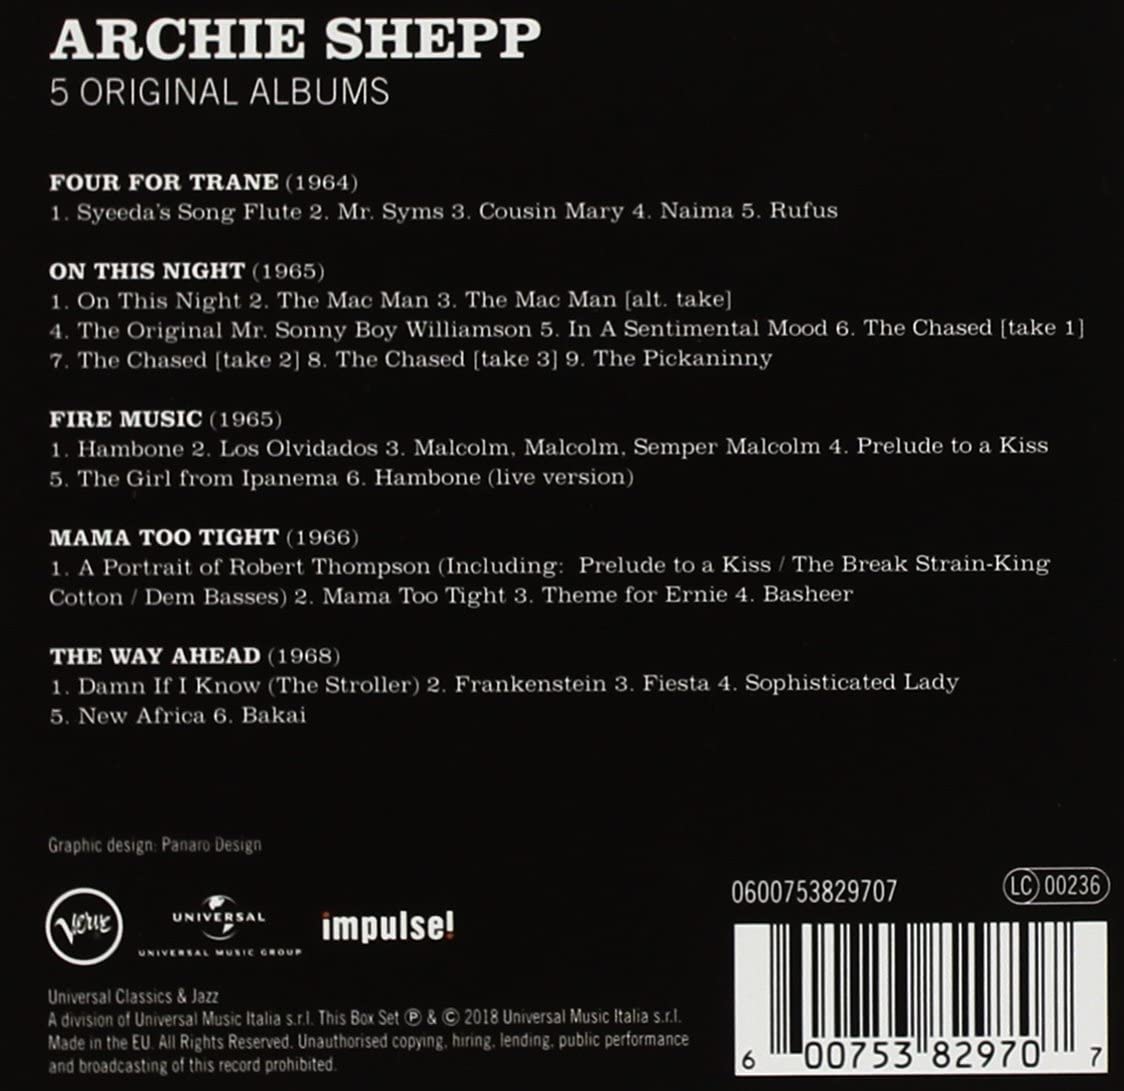 Archie Shepp - 5 Original Albums | Archie Shepp image1